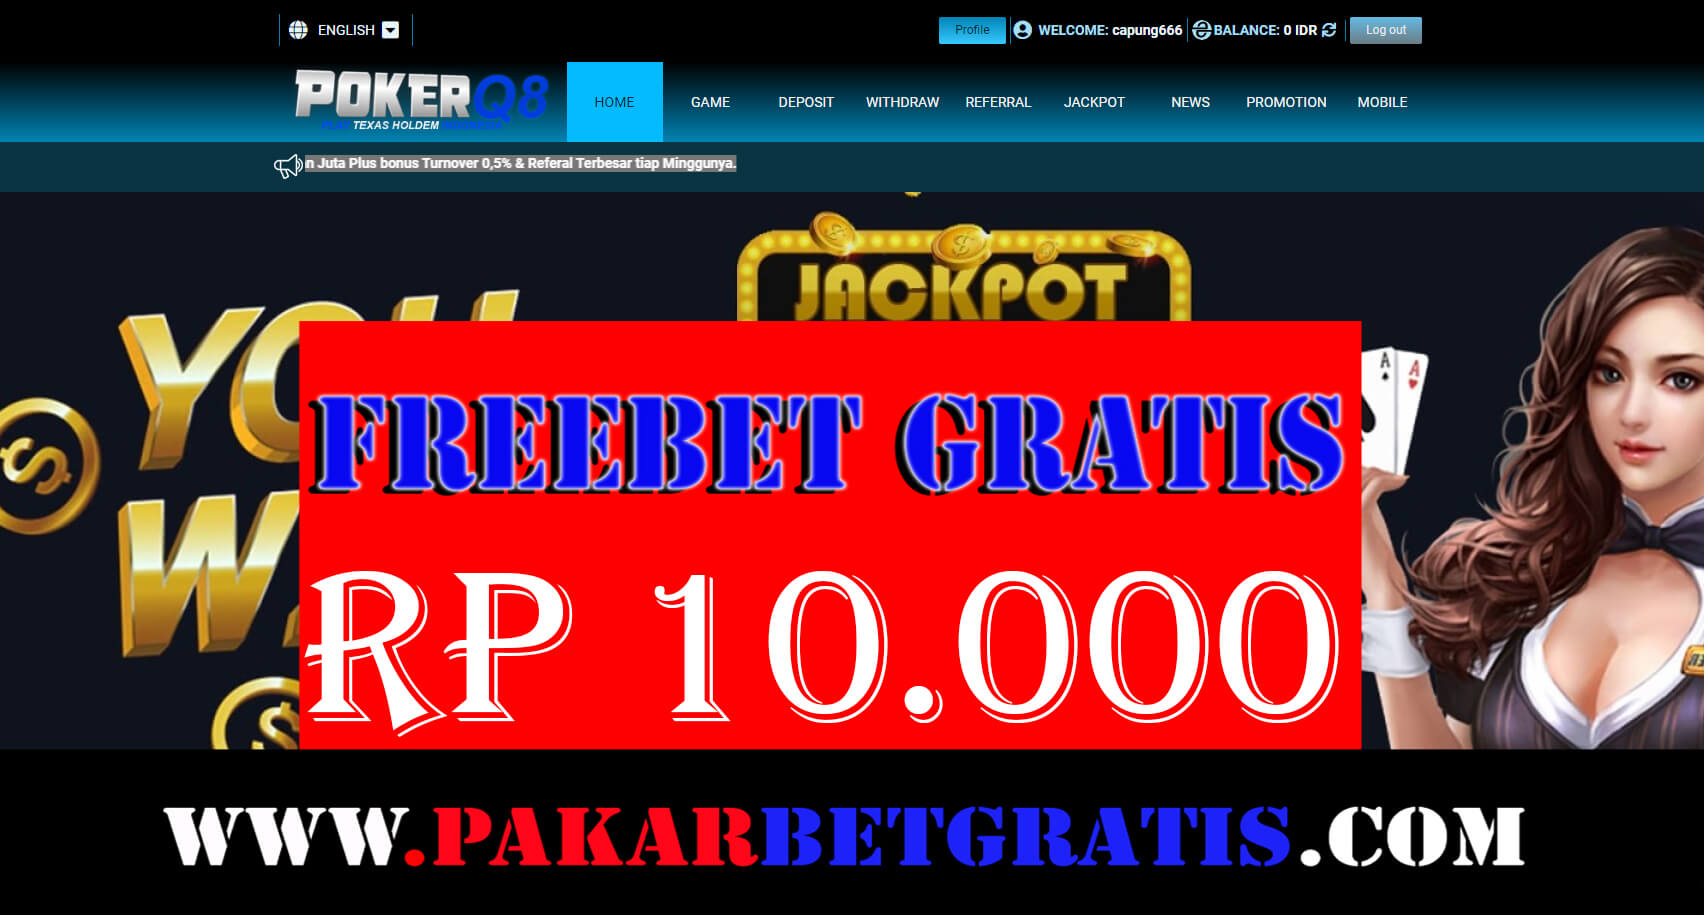 Freebet Gratis POKERQ8 Rp 10.000 Tanpa Deposit